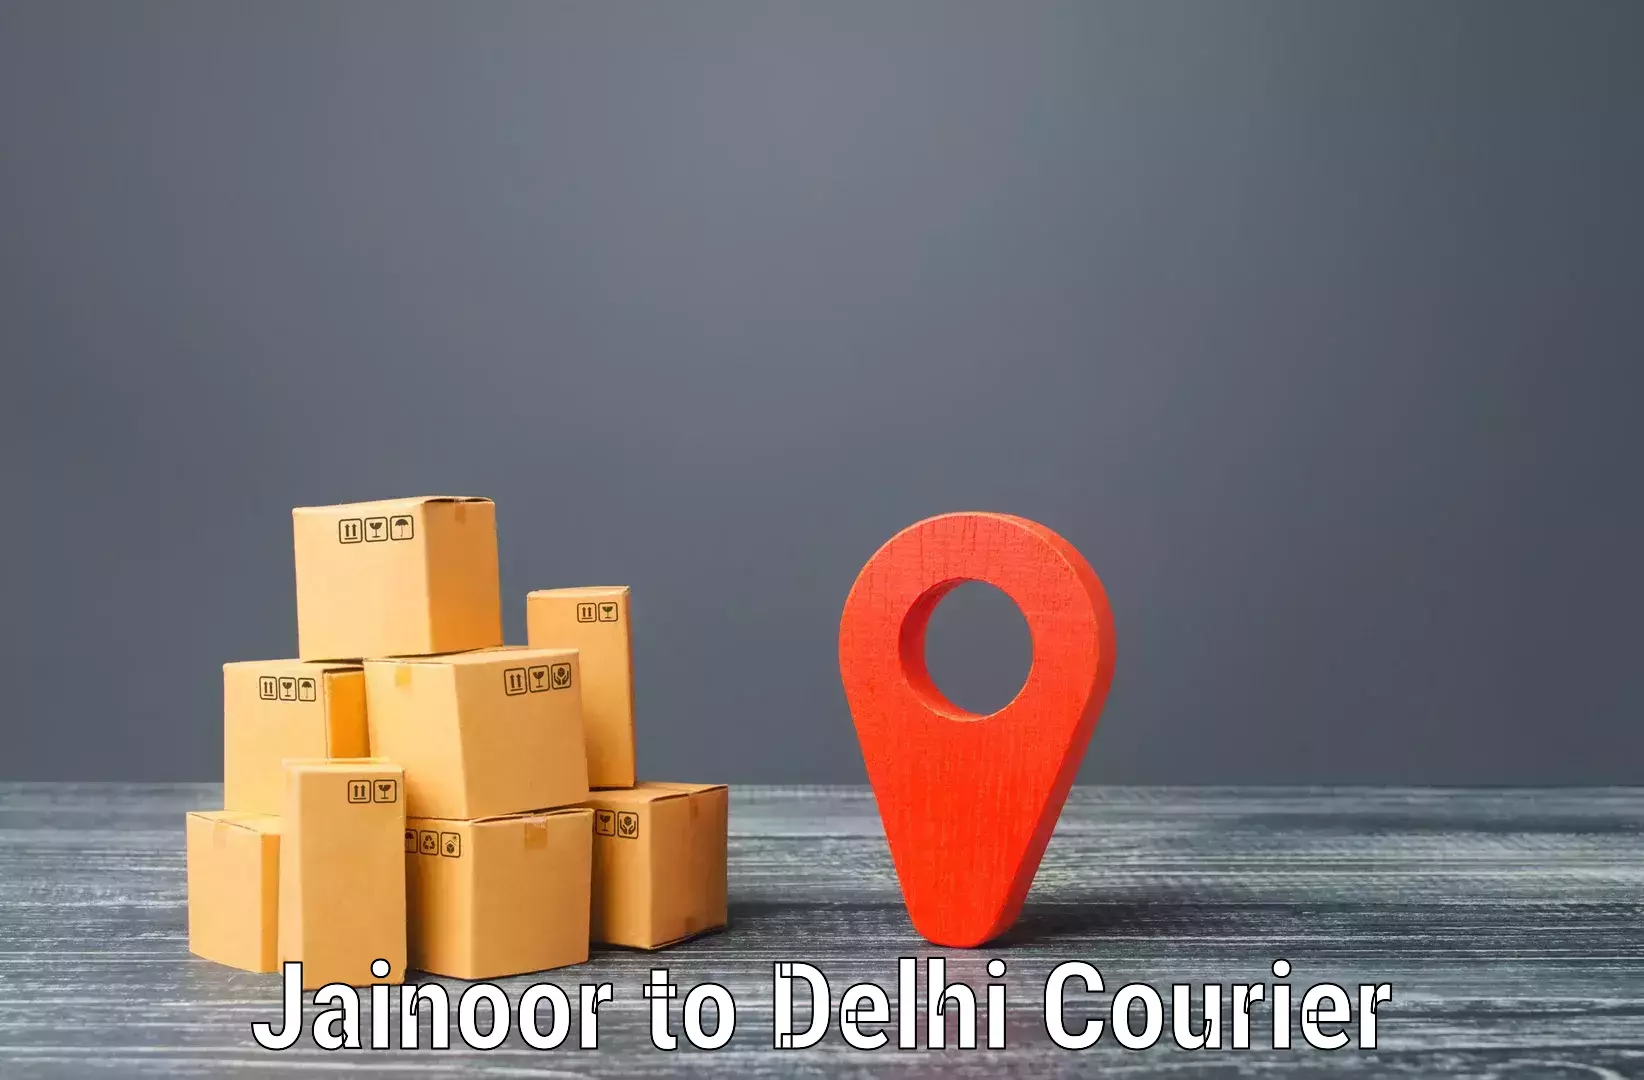 Quick dispatch service Jainoor to Lodhi Road